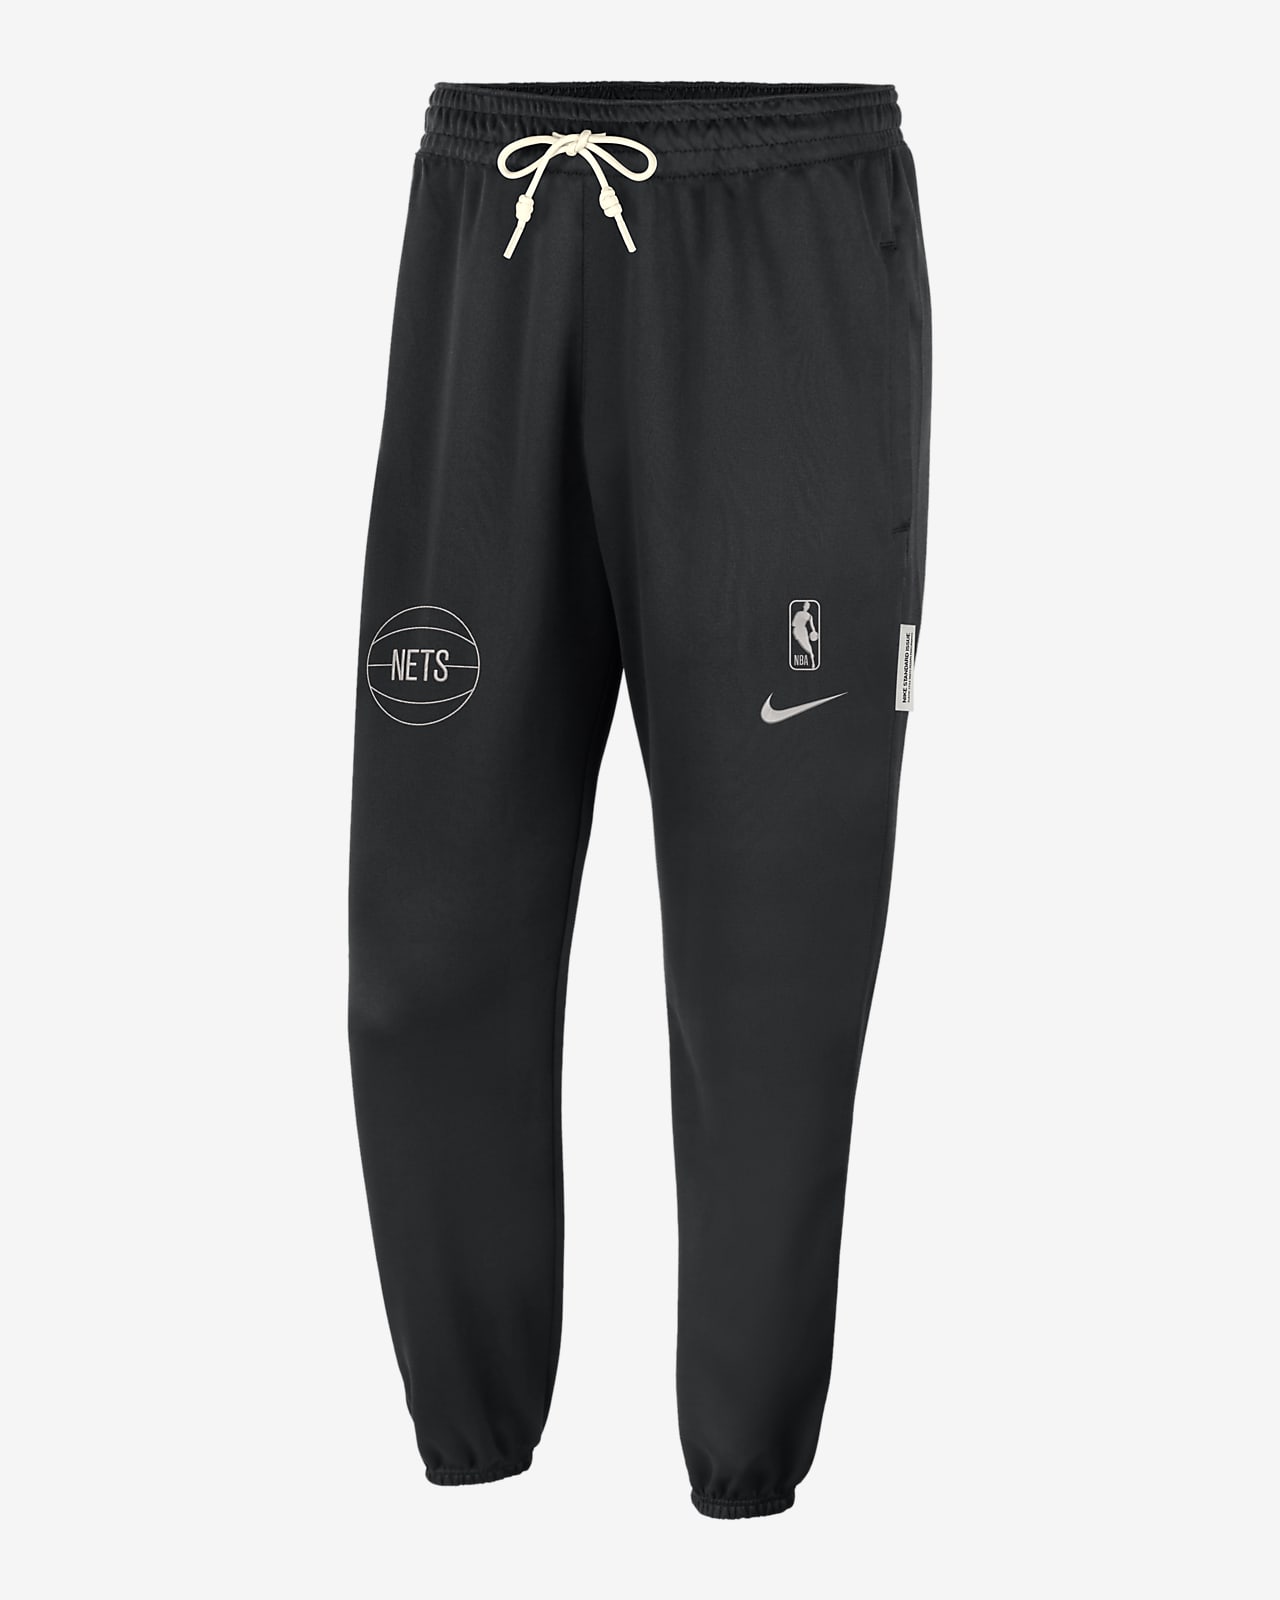 Pantaloni Brooklyn Nets Standard Issue Nike Dri-FIT NBA - Uomo